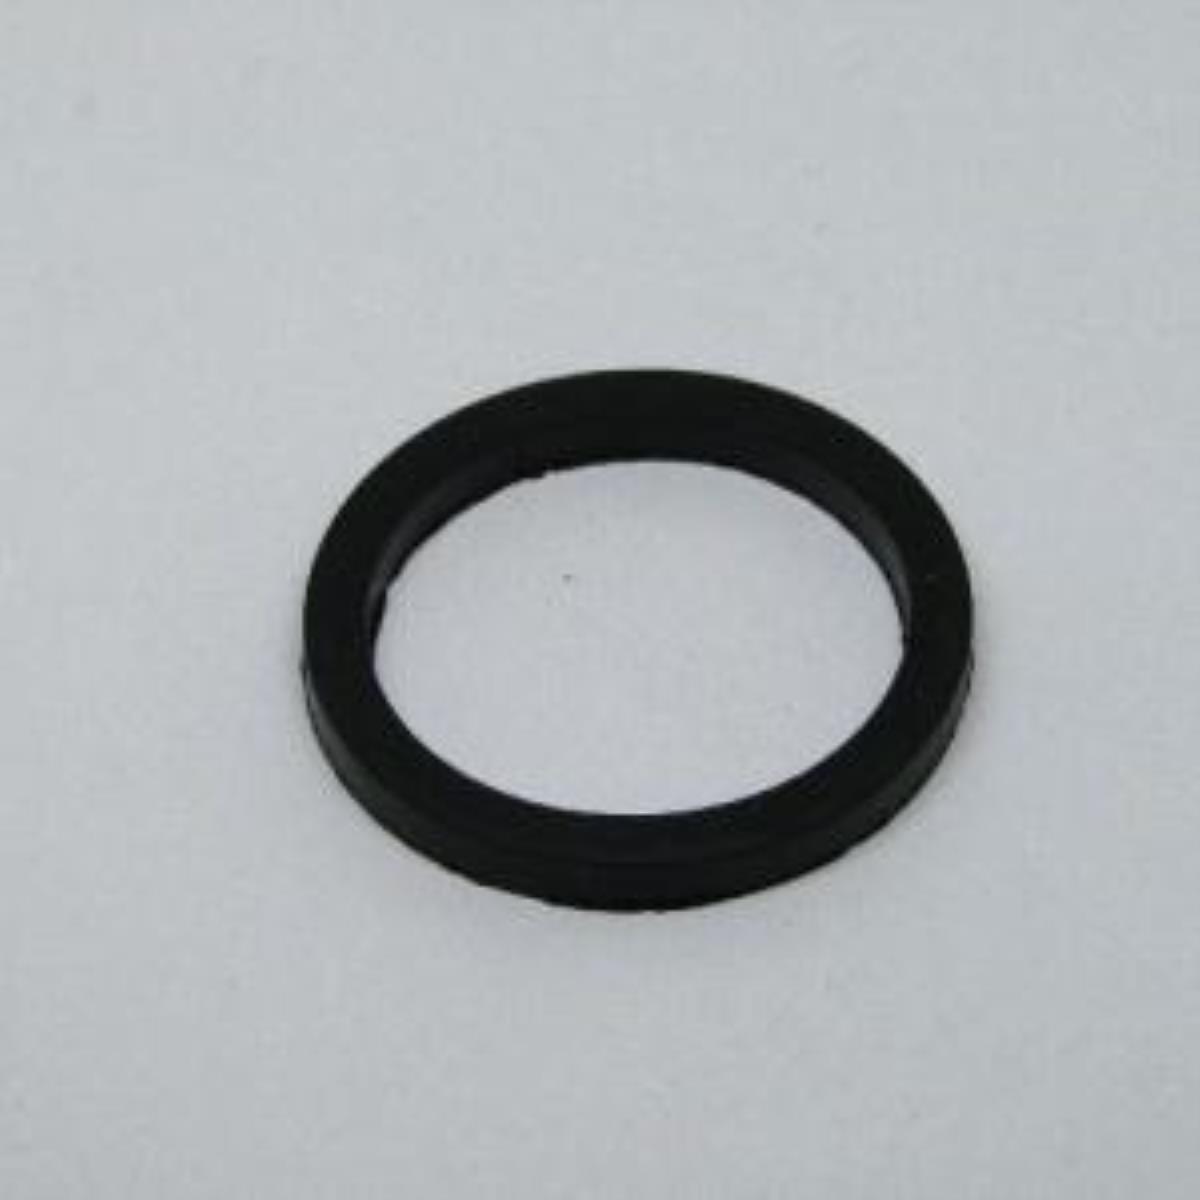 Прокладка резиновая тип RF круглая D=45mm  (квадратный профиль) (для прижимных тэнов) Thermowatt